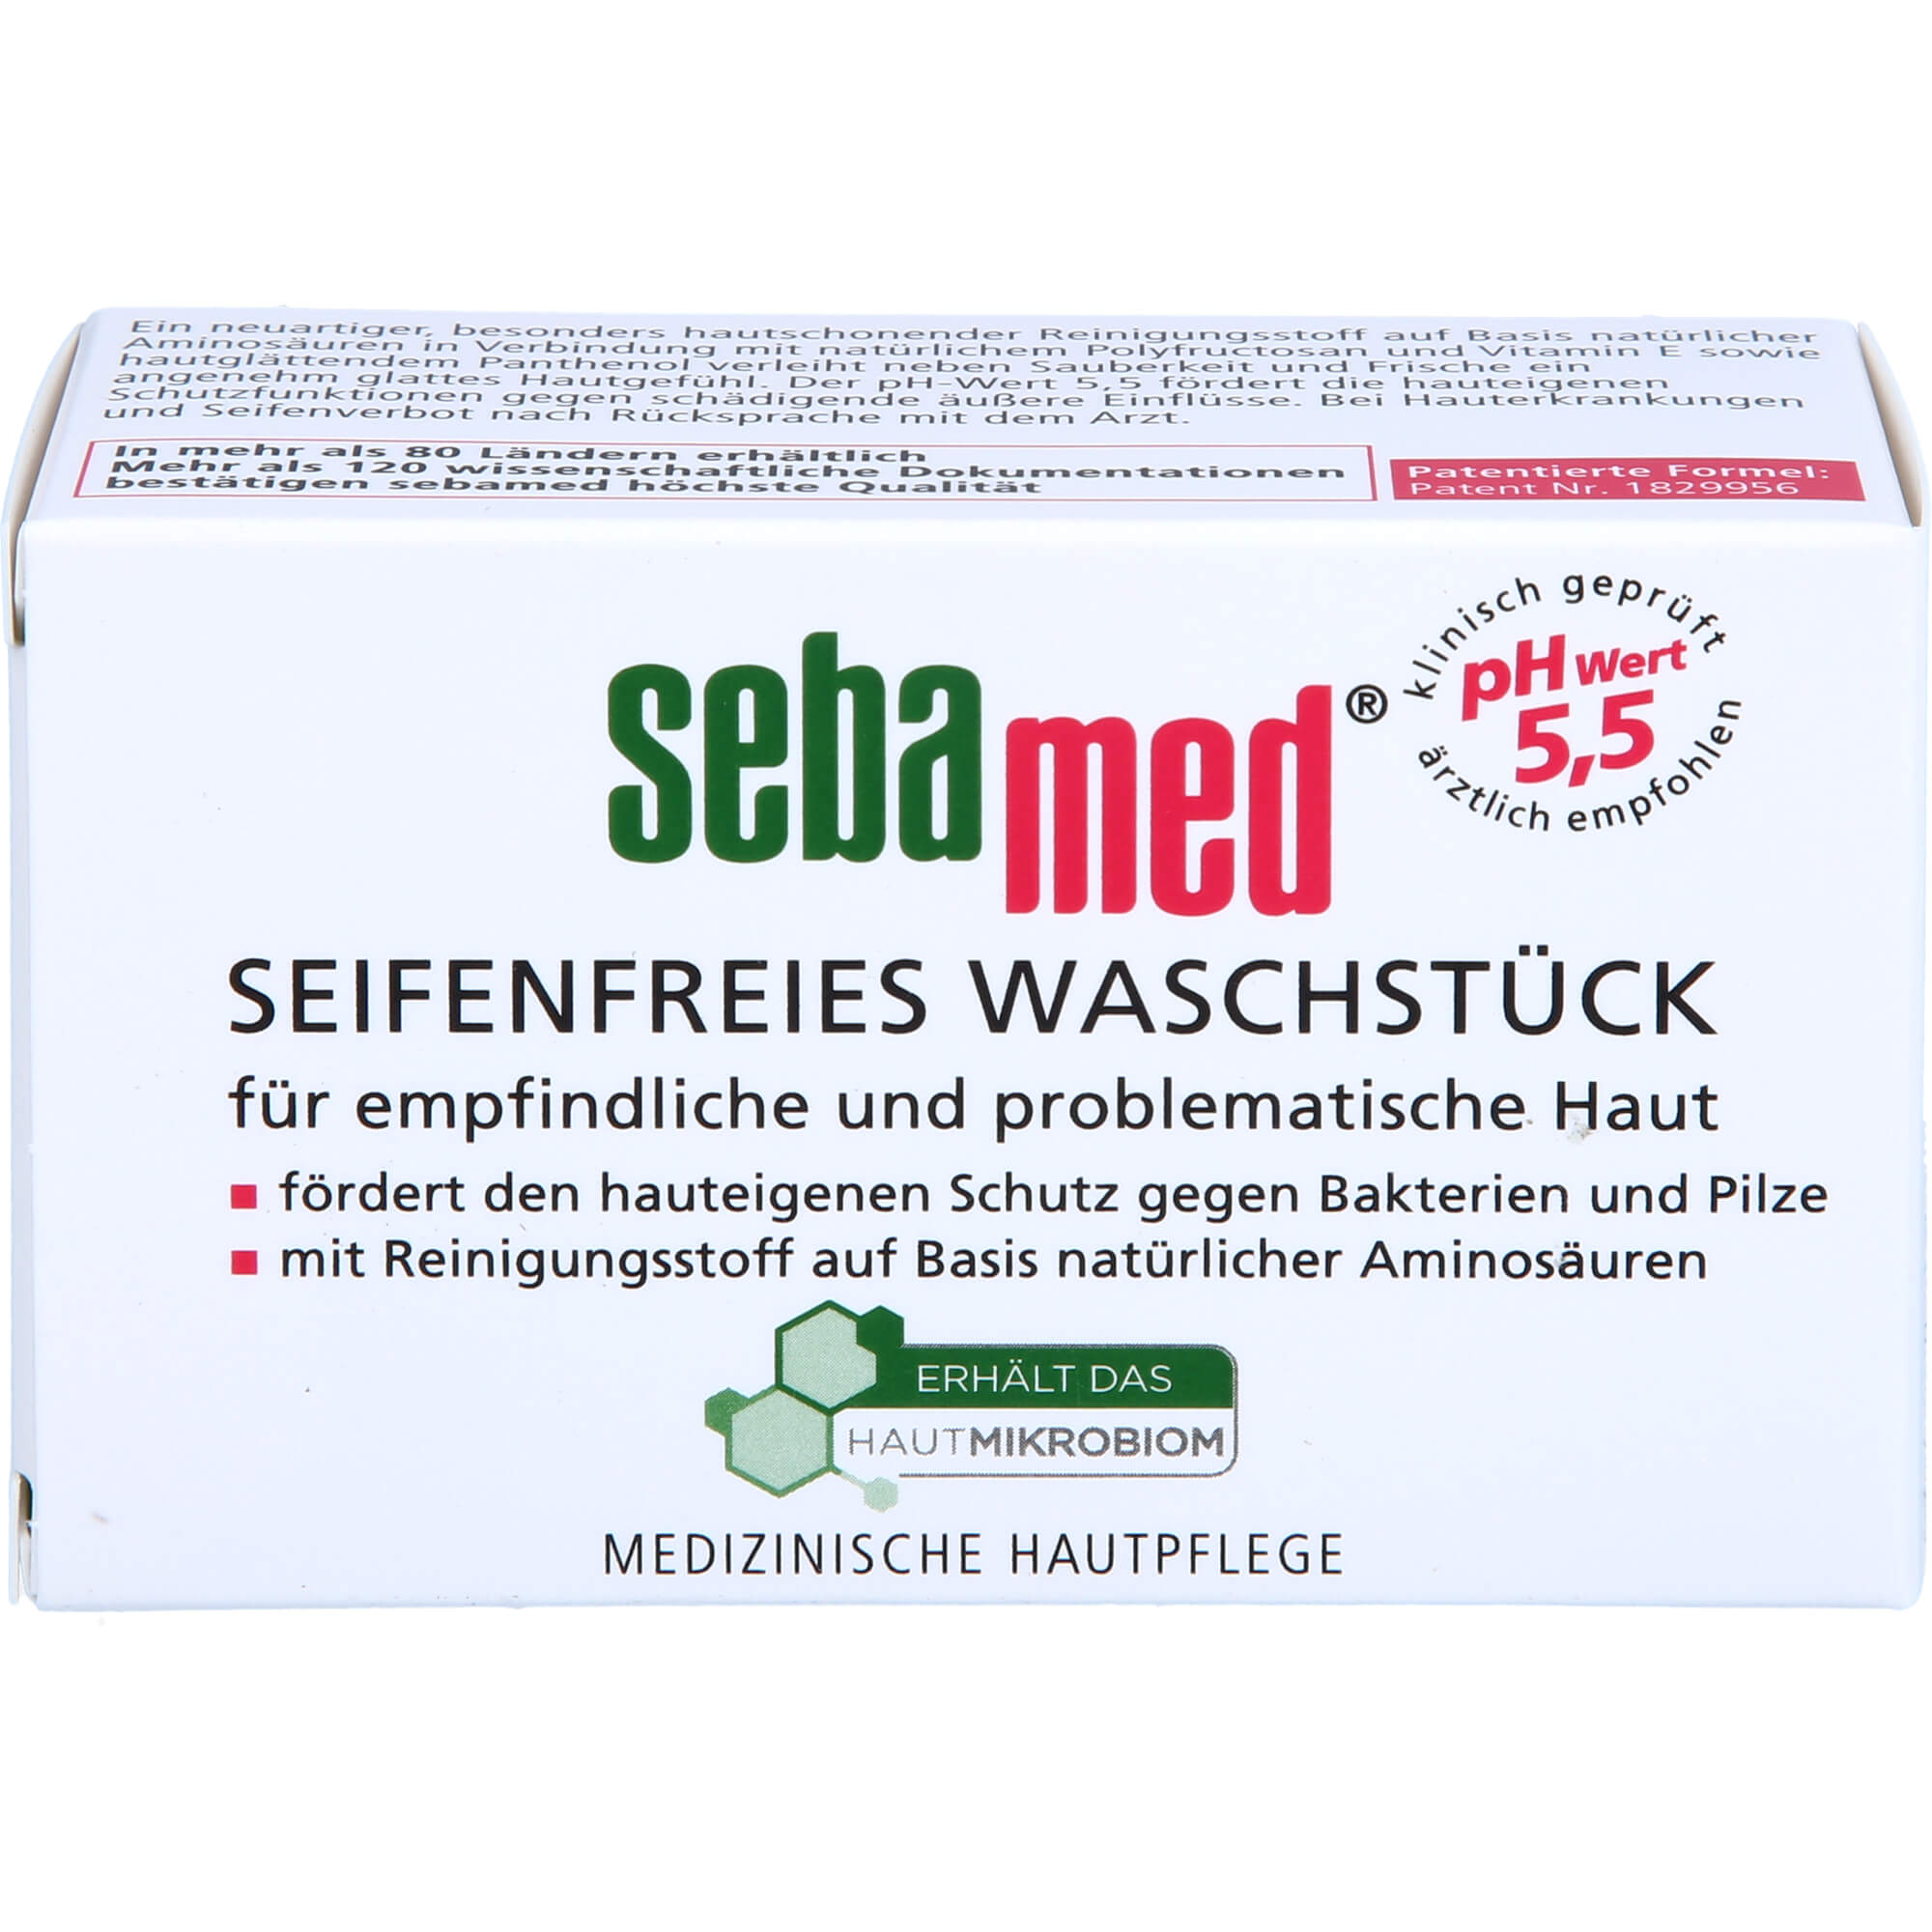 SEBAMED-seifenfreies-Waschstueck